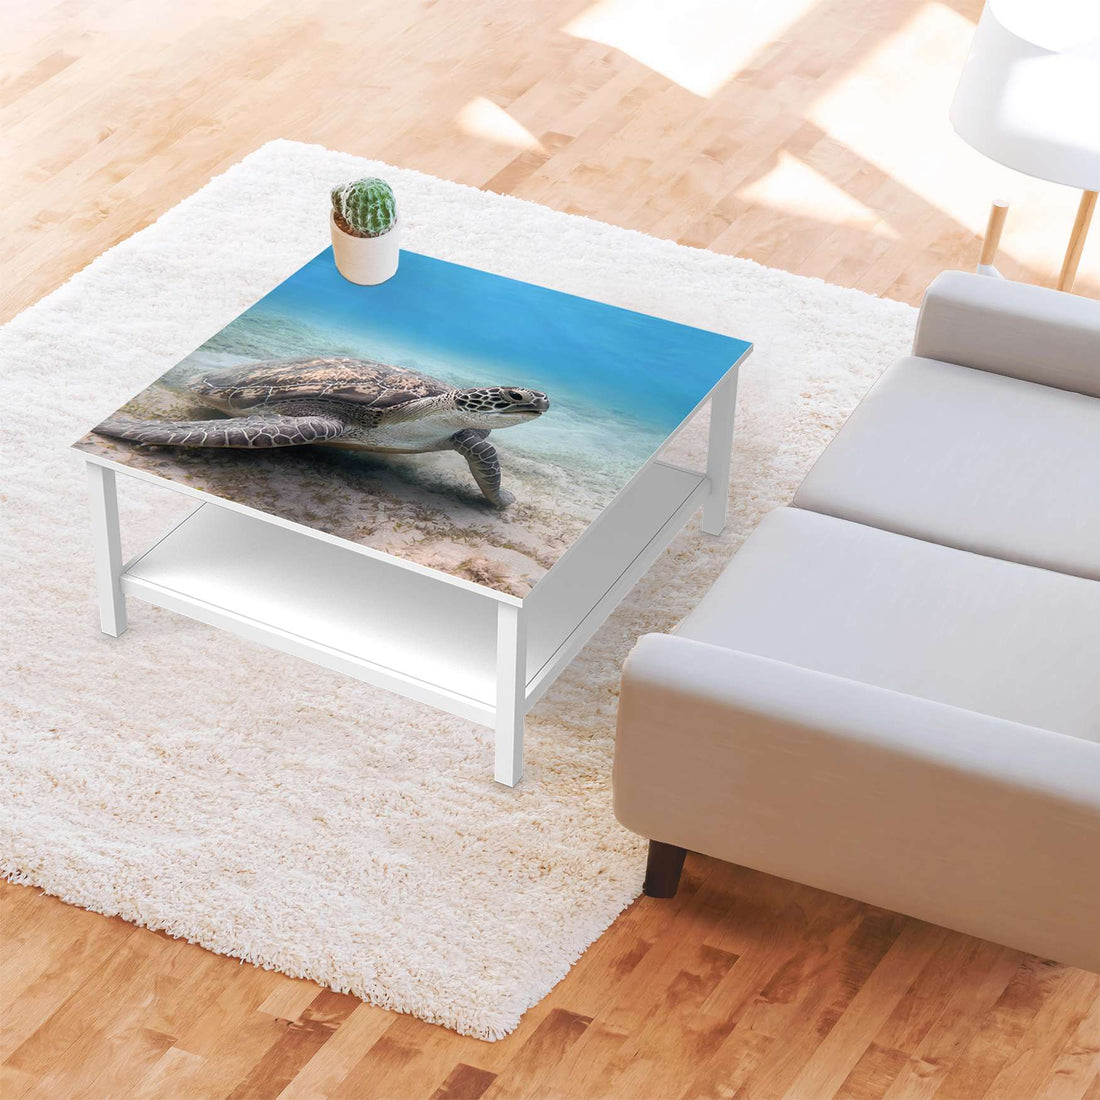 Klebefolie für Möbel Green Sea Turtle - IKEA Hemnes Couchtisch 90x90 cm - Wohnzimmer